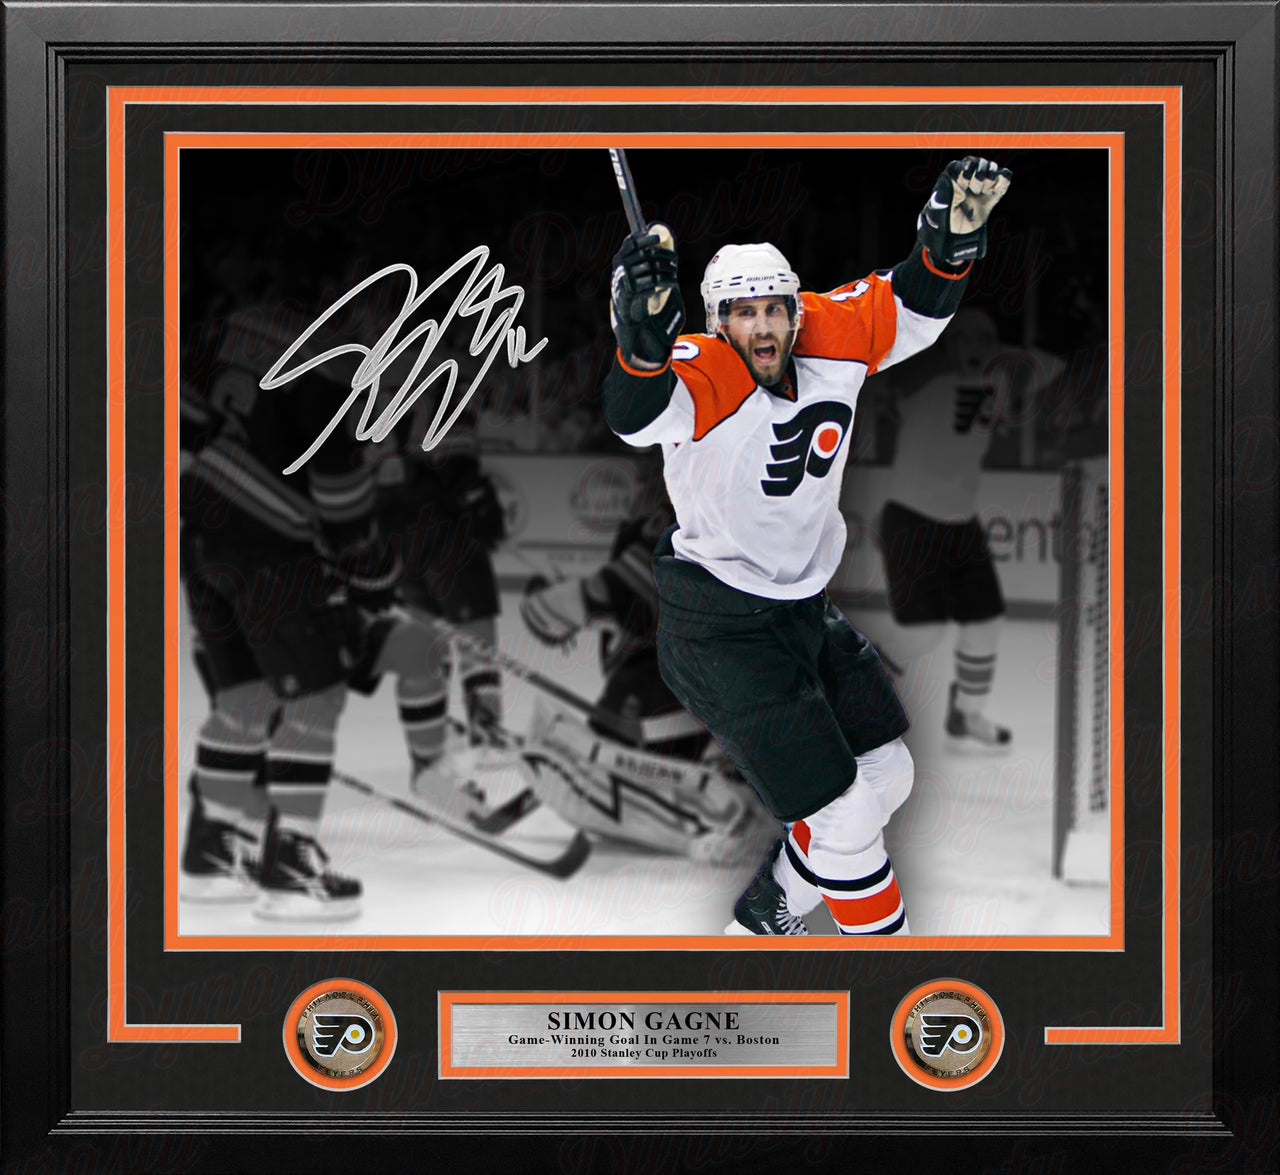 Simon Gagne Philadelphia Flyers Gm 7 Game-Winning Goal v Bruins Autographed 11x14 Framed Black Photo